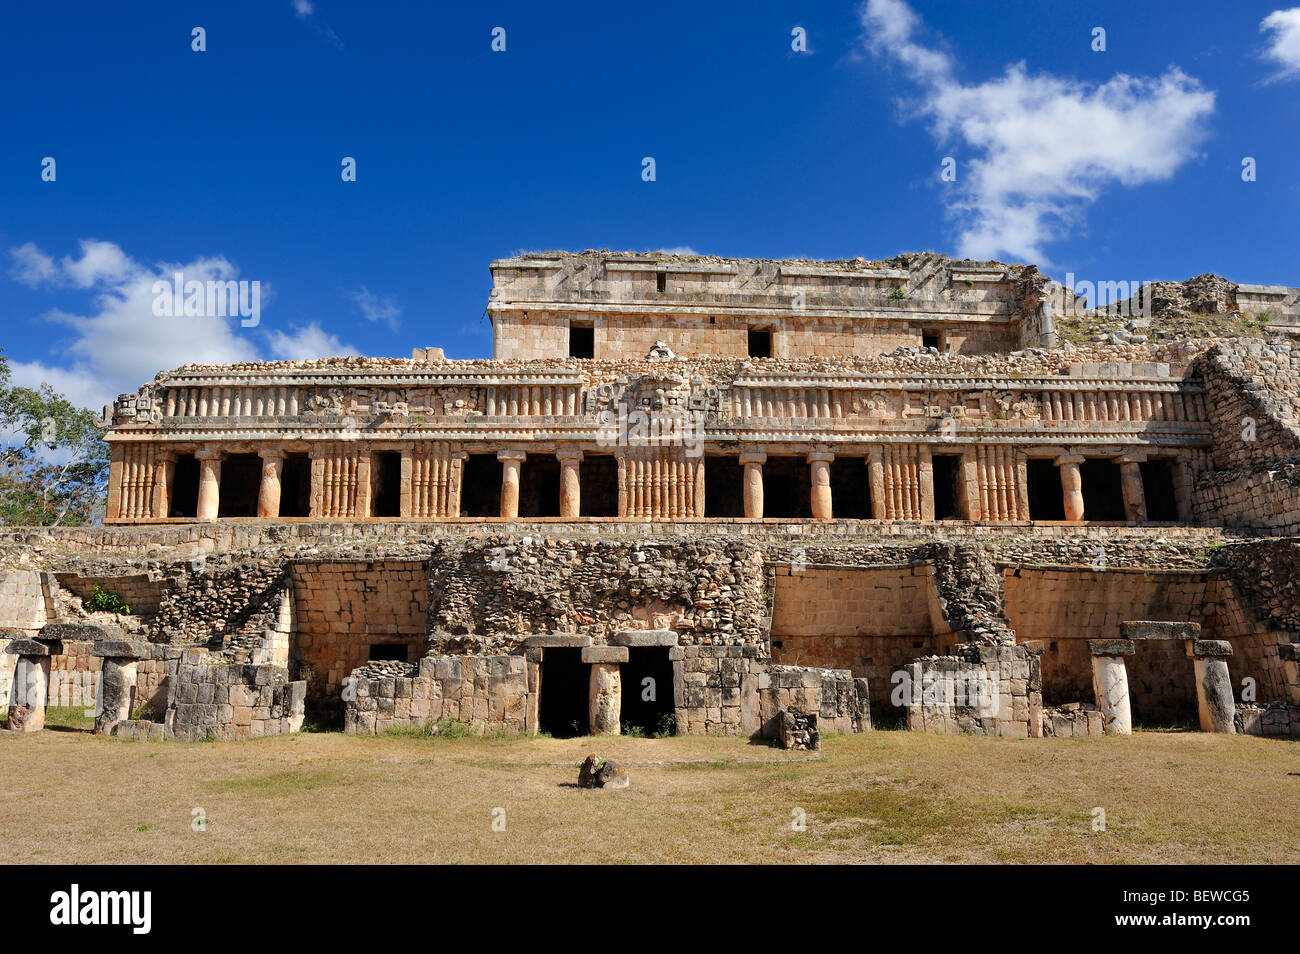 The Great Palace (El Palacio) at the Maya ruin site of Sayil, Yucatan, Mexico Stock Photo